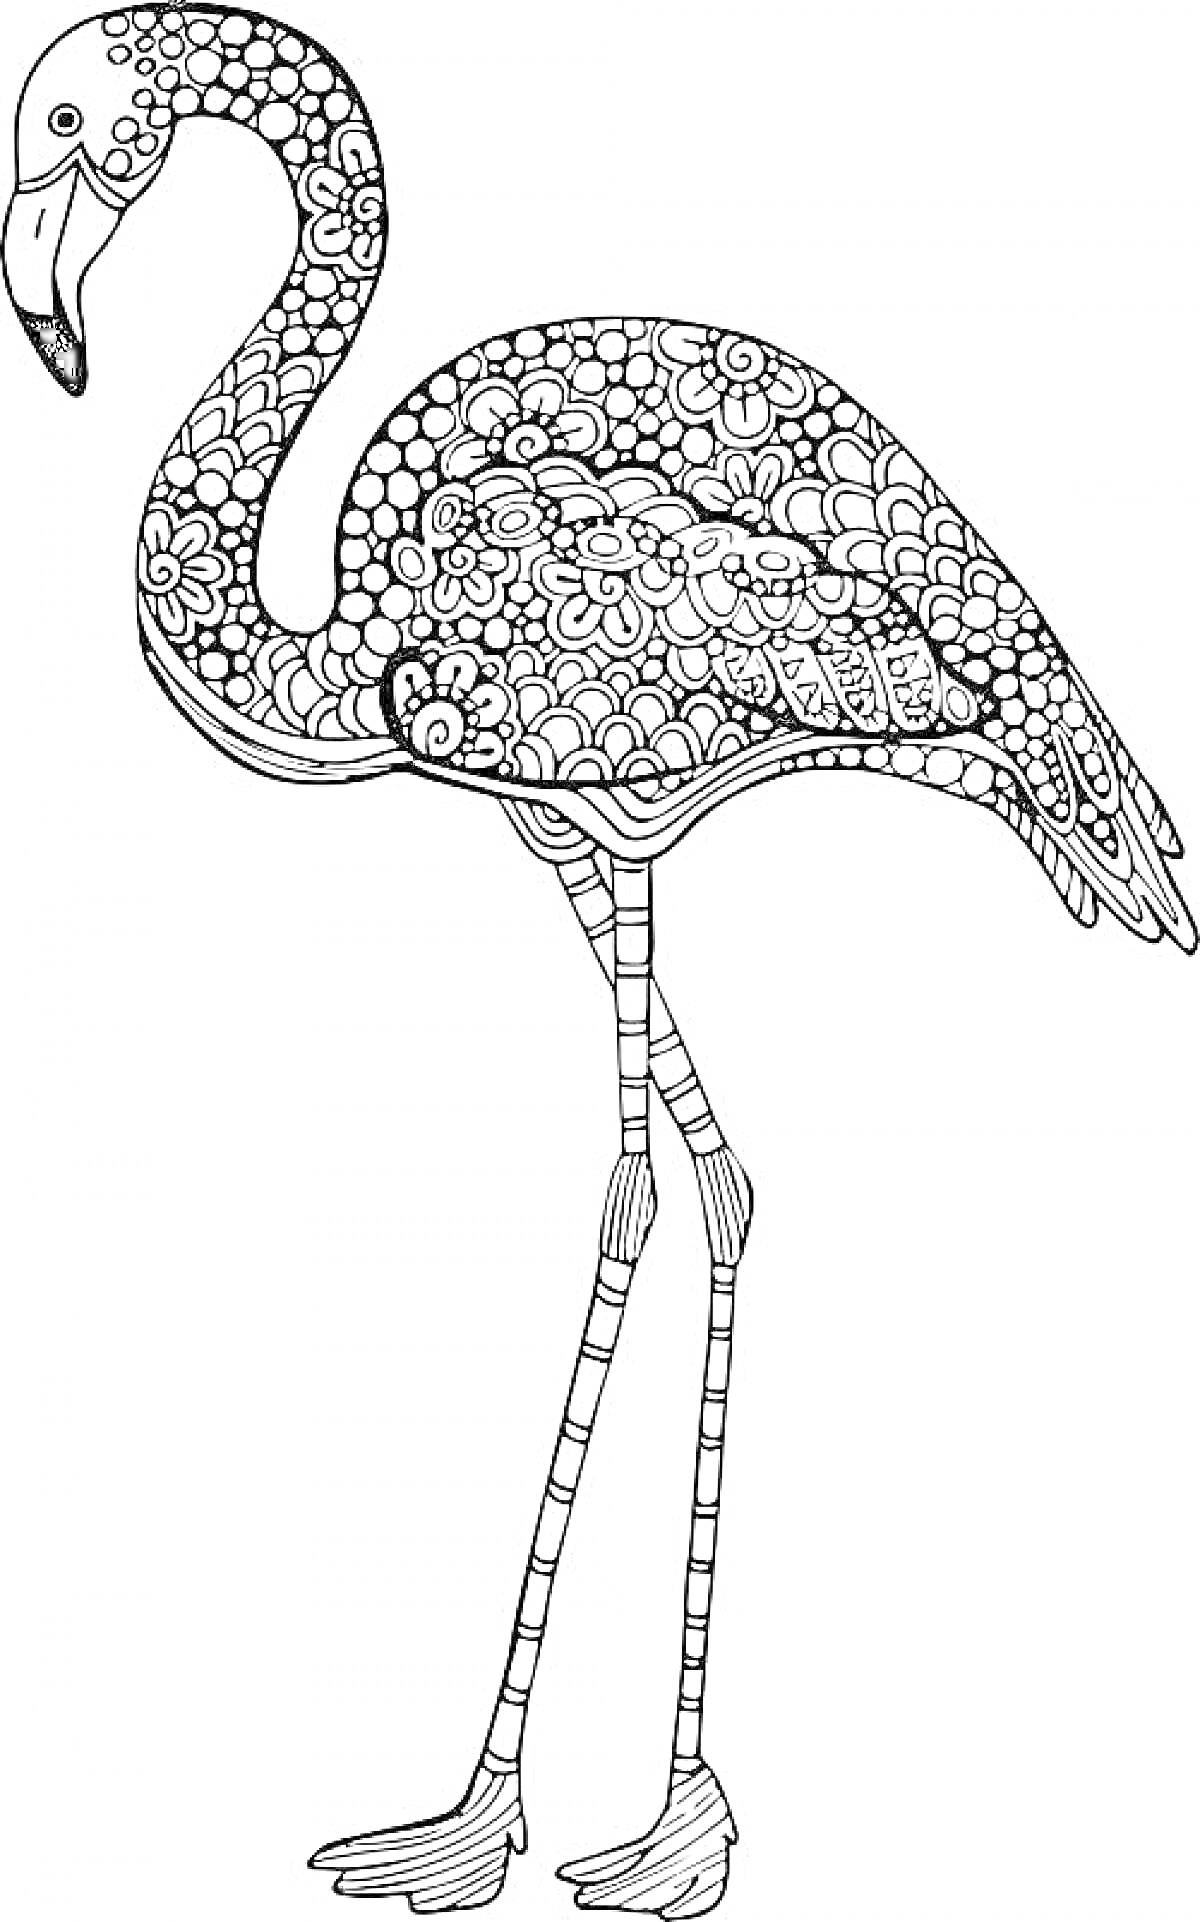 Раскраска Антистресс раскраска фламинго с узорами из цветов и геометрических фигур